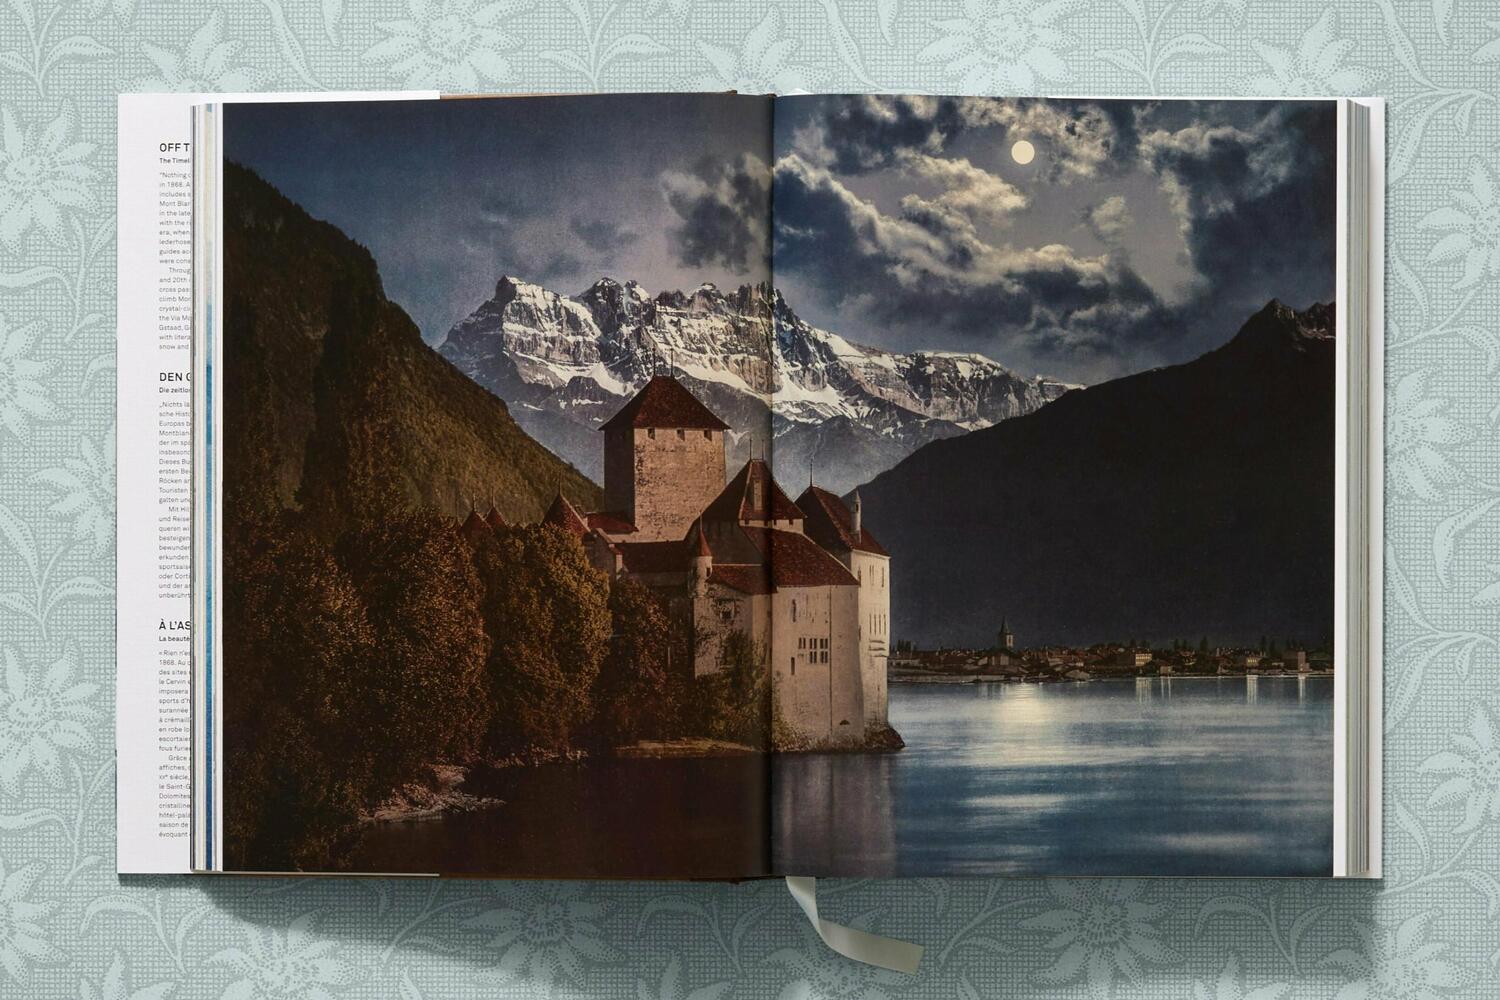 Bild: 9783836573559 | The Alps 1900. A Portrait in Color | Agnès Couzy | Buch | 600 S.